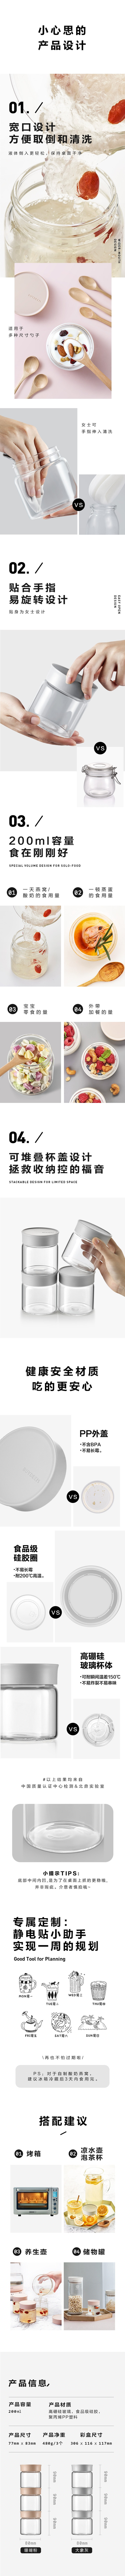 Leakproof glass jar 200ml elephant gray